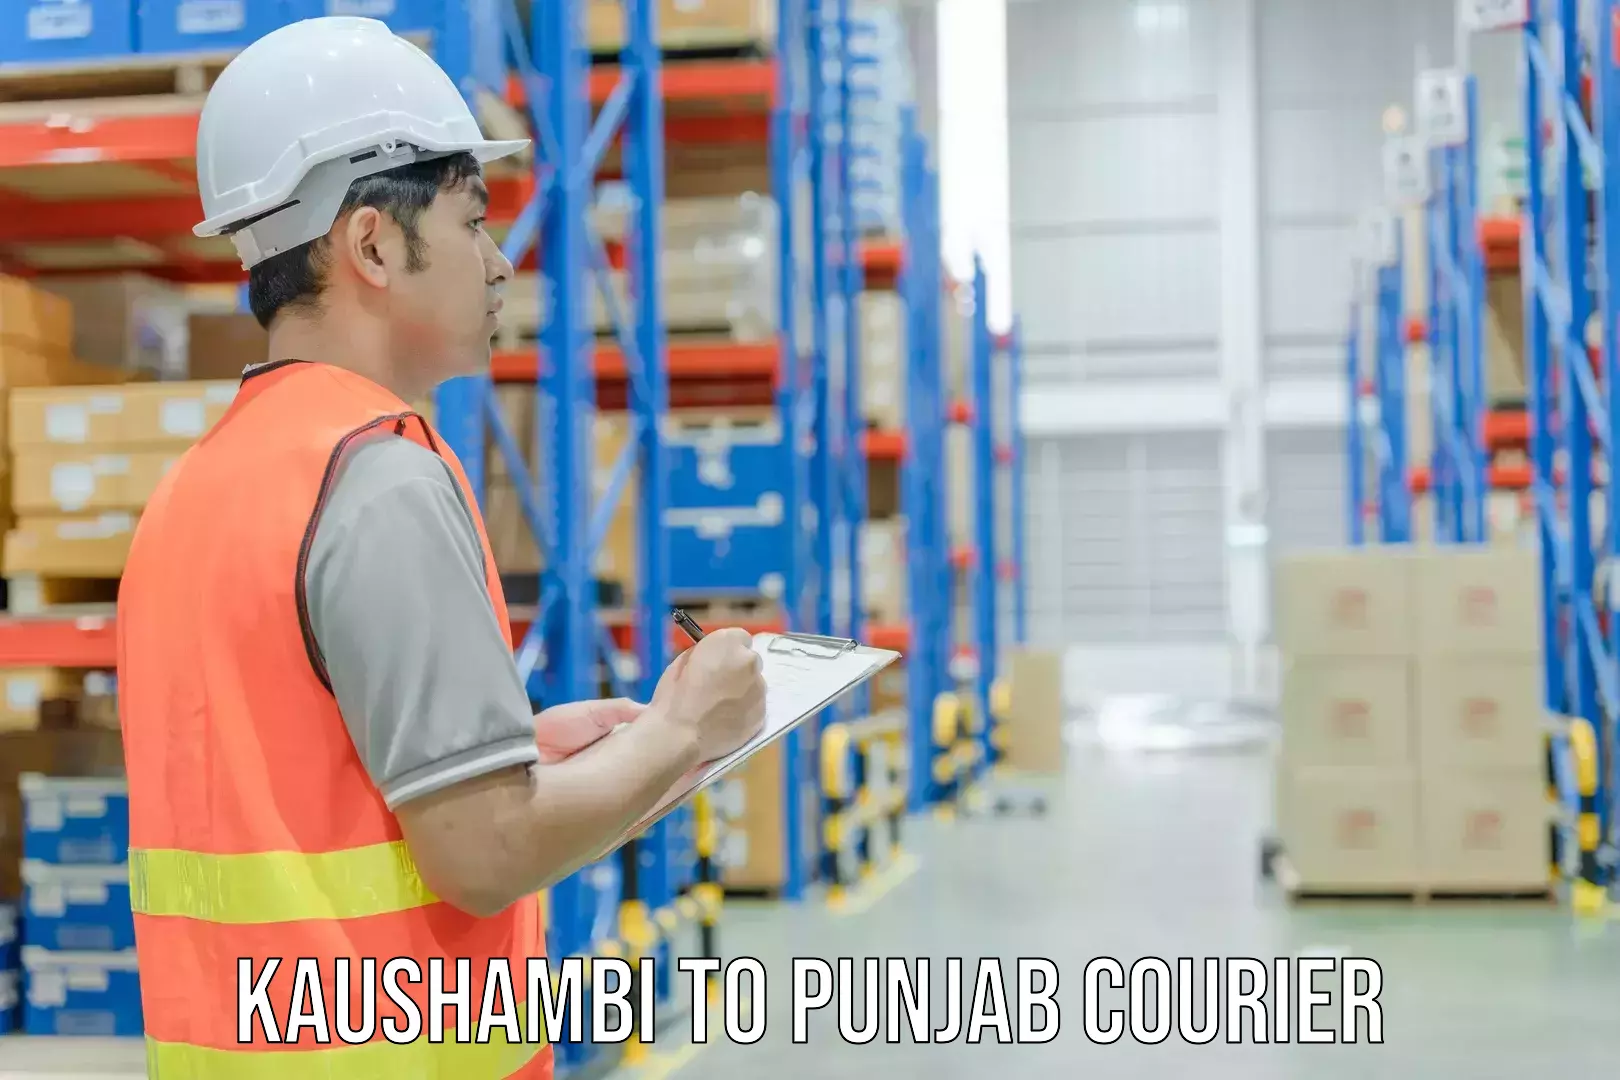 Business shipping needs Kaushambi to Phagwara